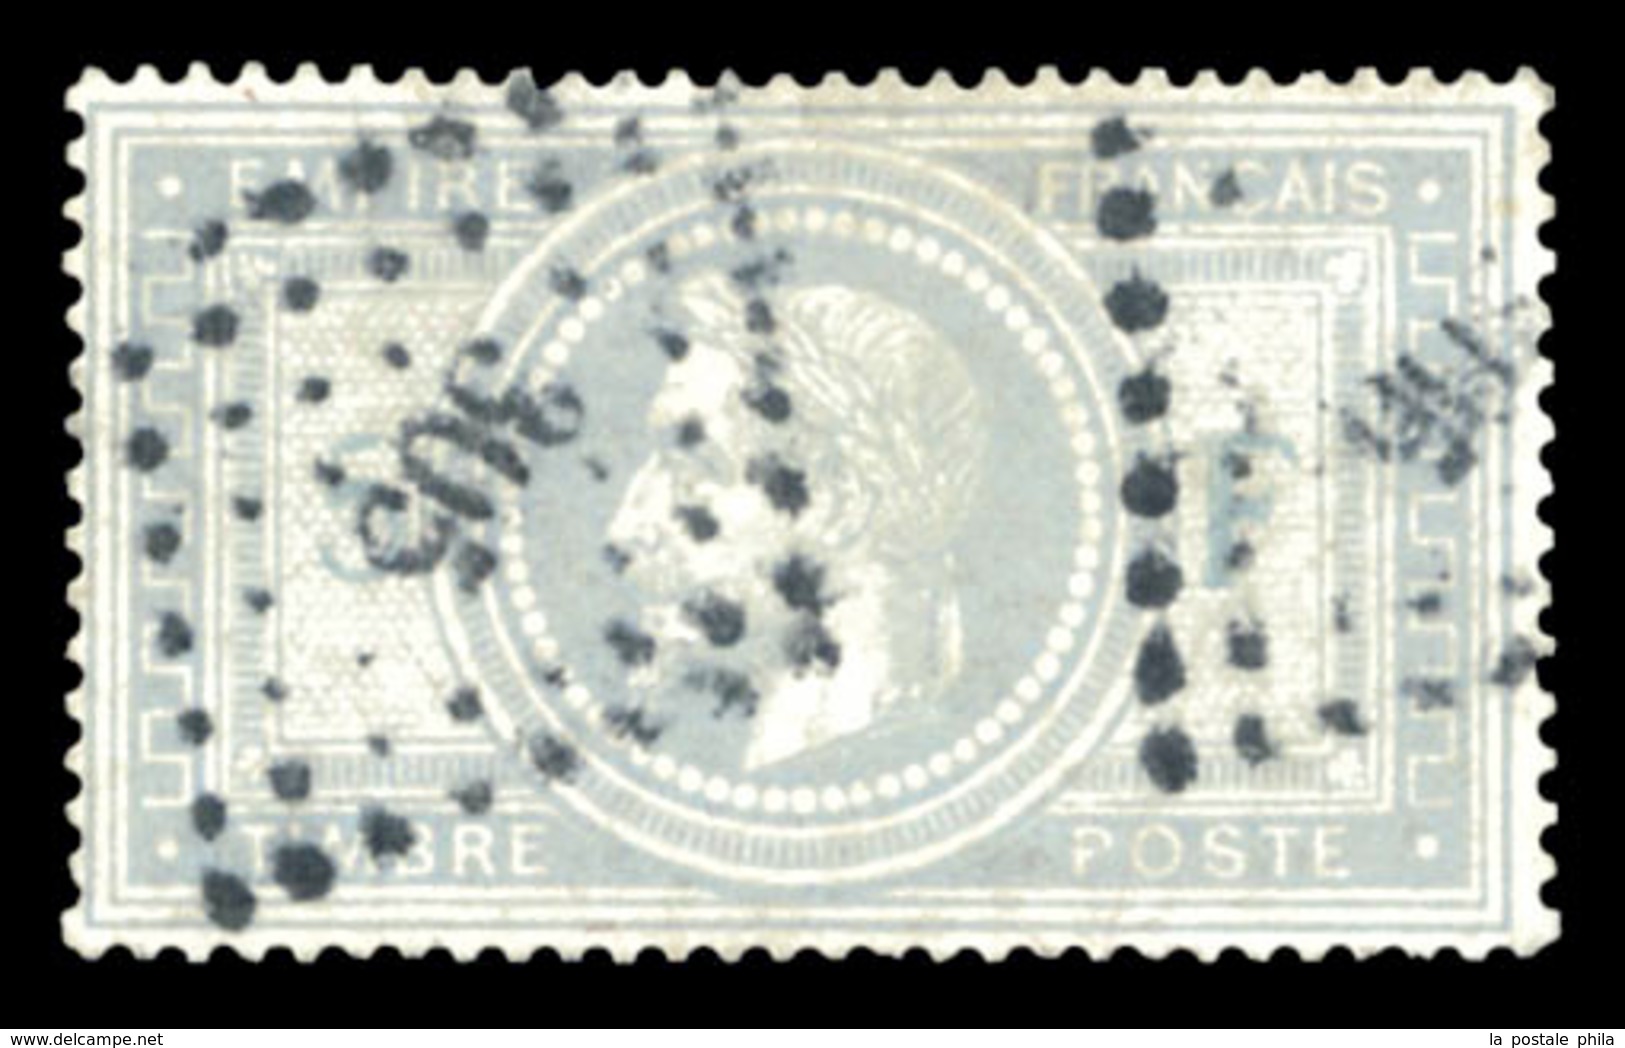 O N°33, 5F Violet-gris Obl PC '305', Très Bon Centrage. SUP (signé Scheller/Brun/Calves/certificat)  Qualité: O  Cote: 1 - 1863-1870 Napoléon III Lauré